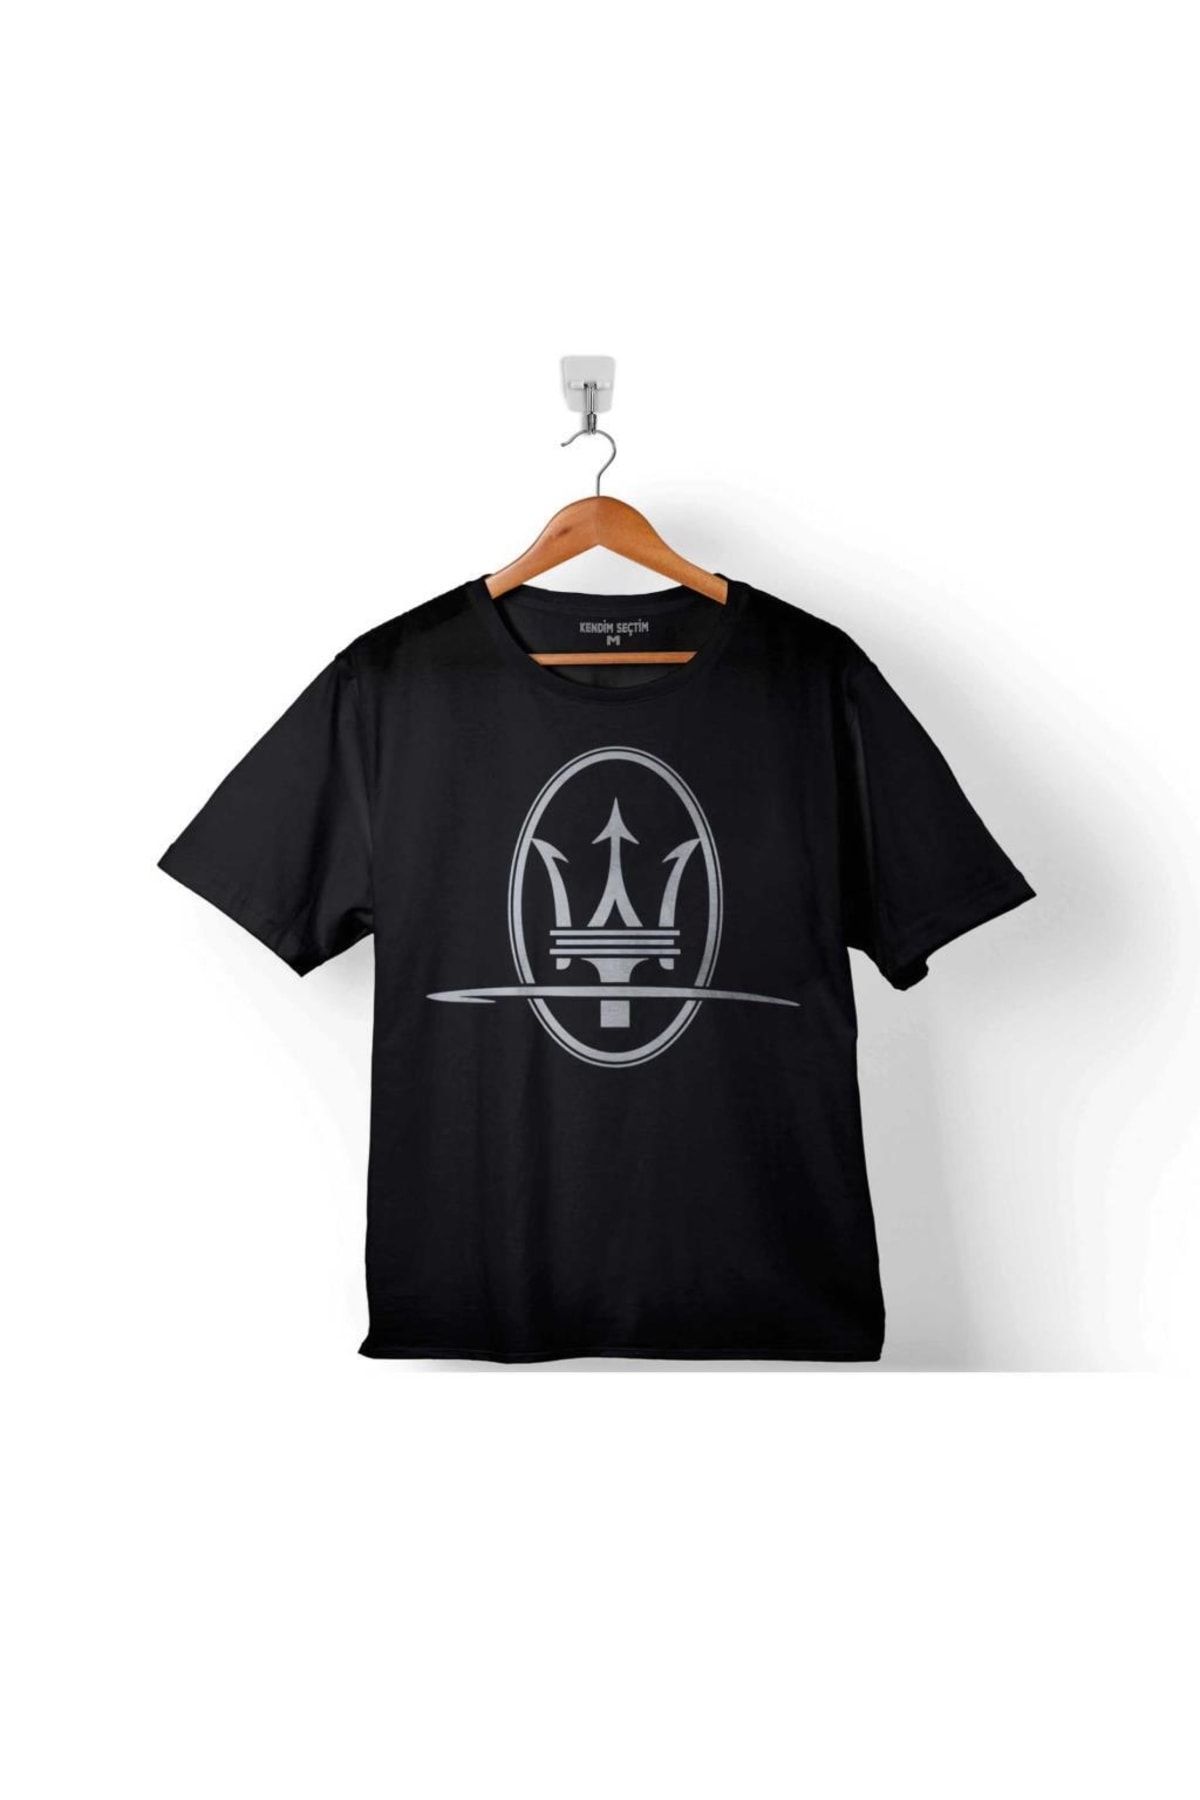 Kendim Seçtim Maseratı Logo Black 2 Çocuk Tişört